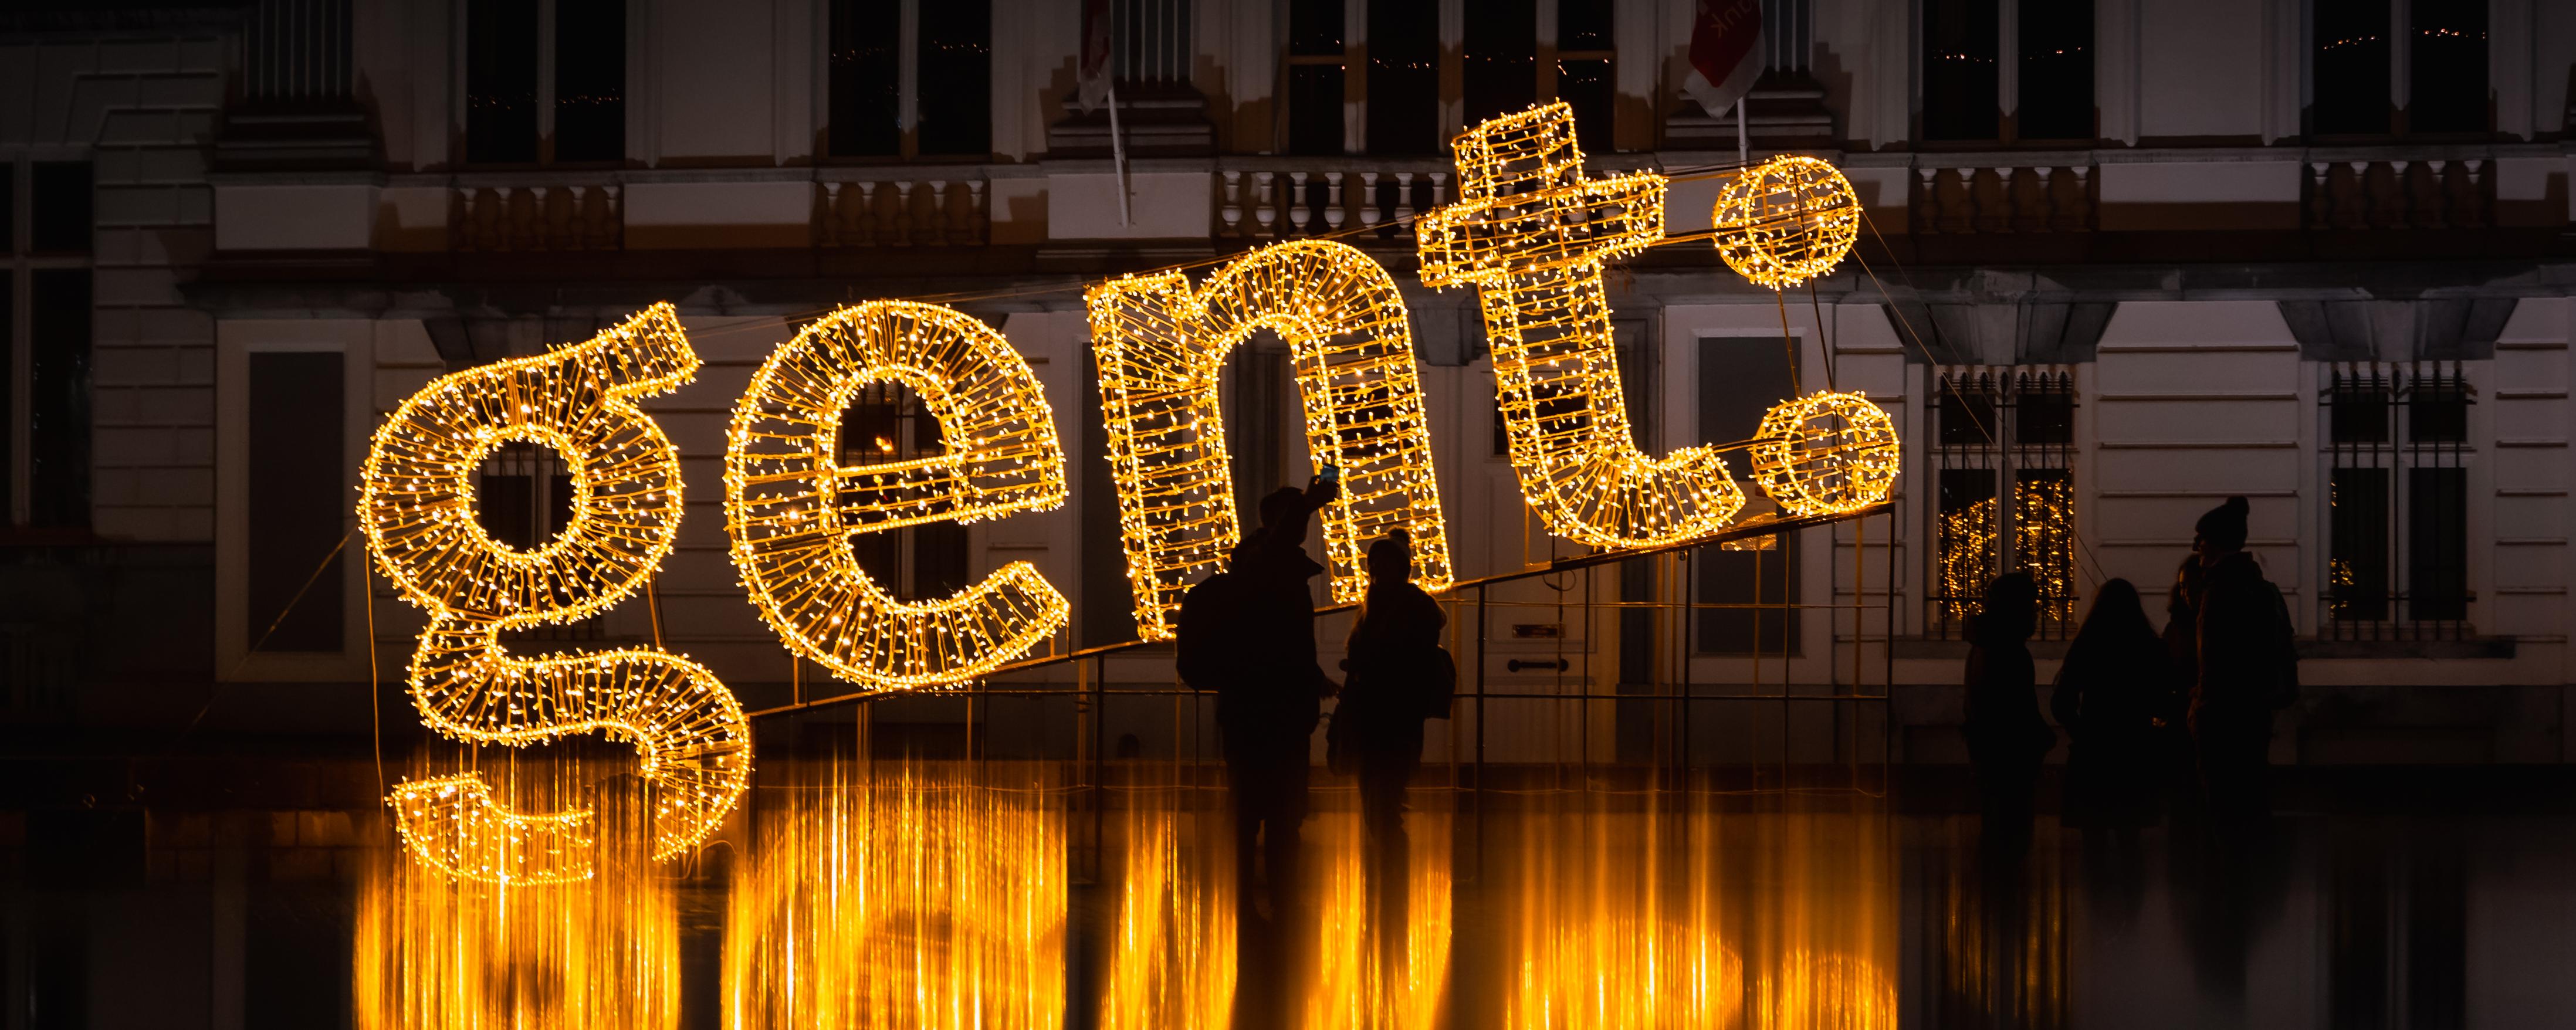 letters van het logo van stad Gent als lichtinstallatie